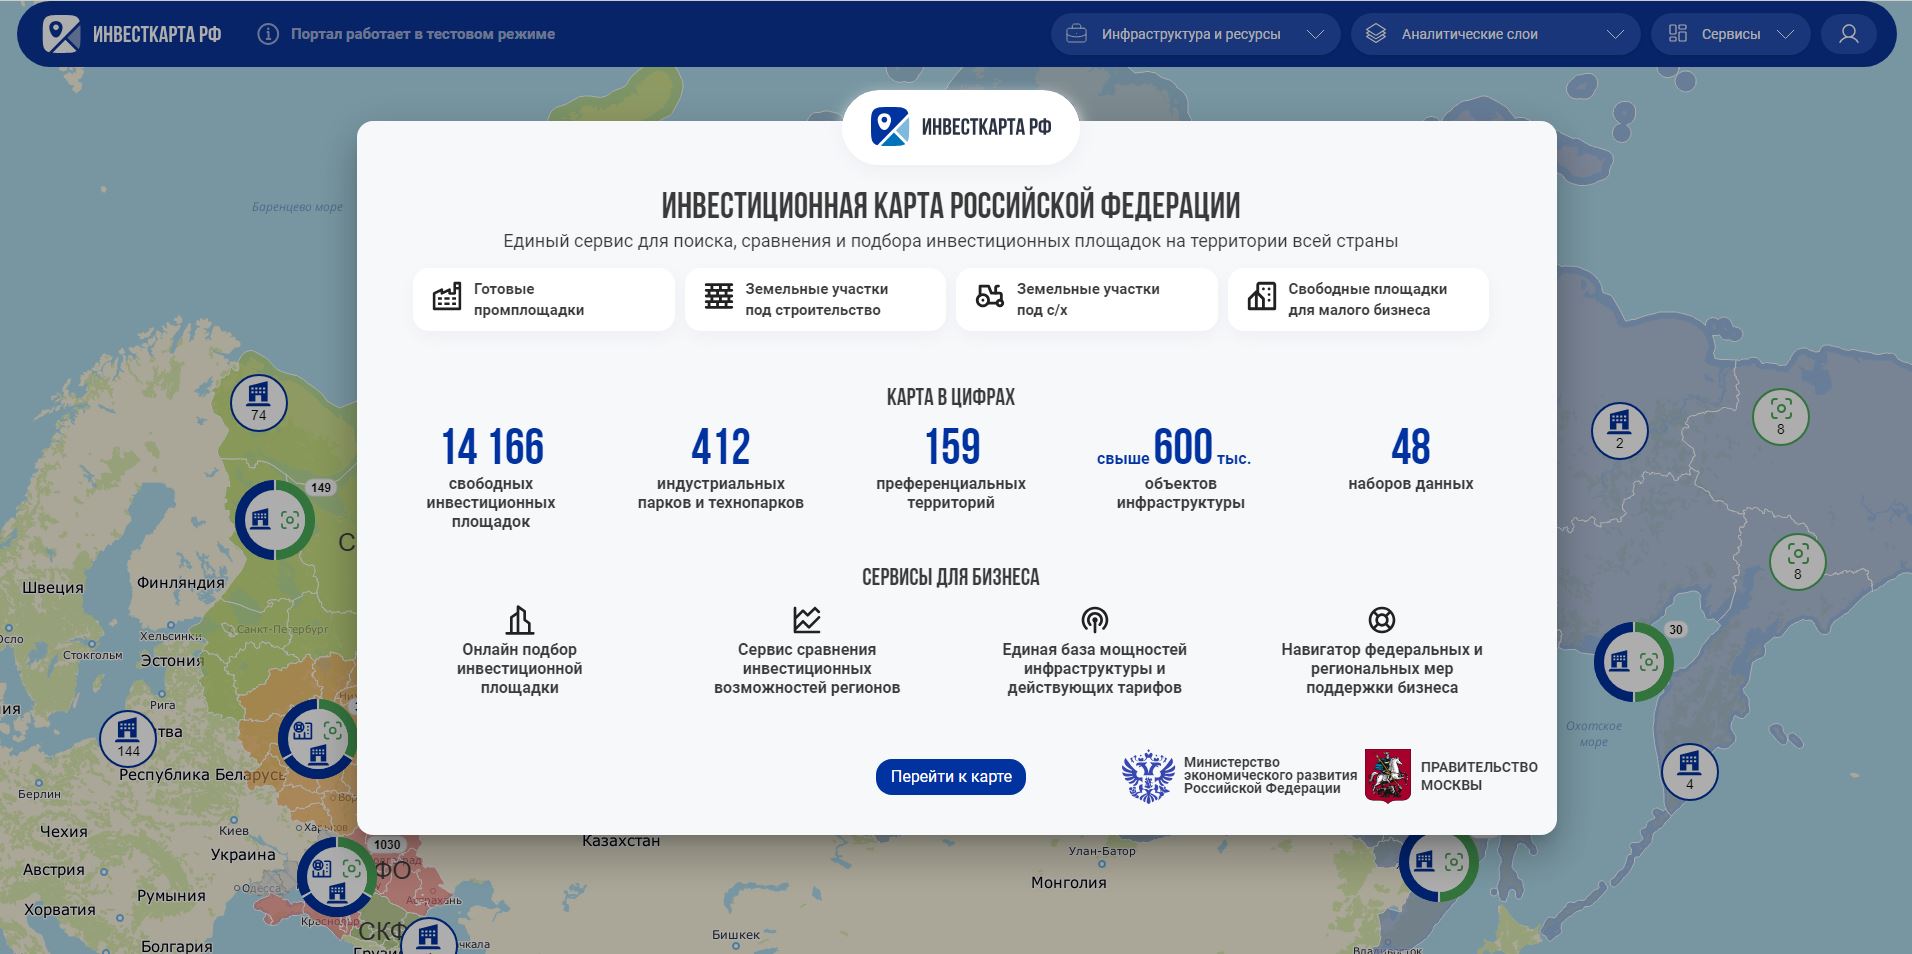 Более 14 тысяч площадок под производства: Минэкономразвития представило инвестиционную карту России